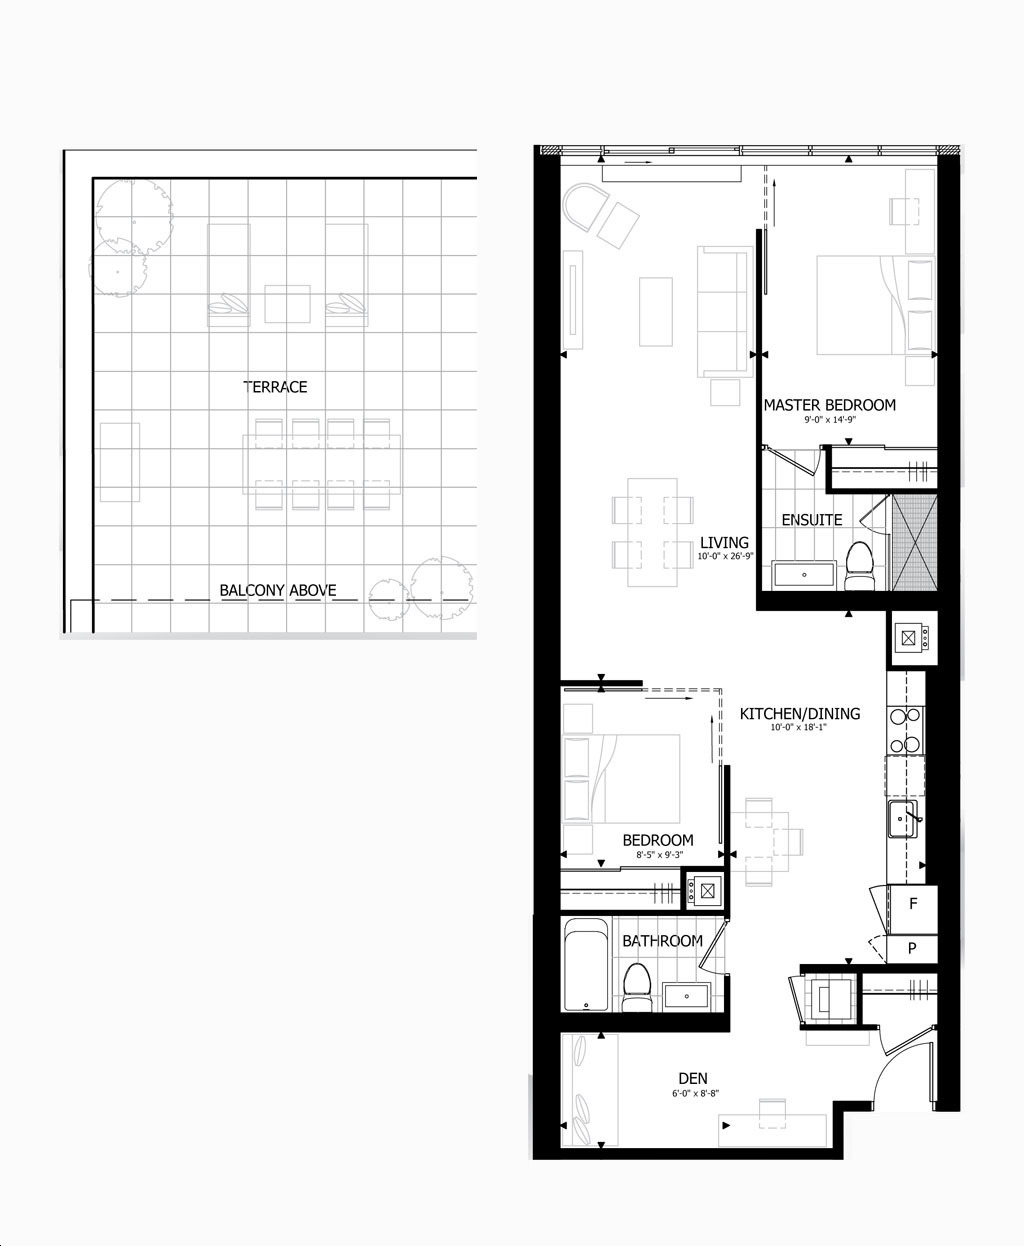 8x5 Bathroom Floor Plans 1500+ Trend Home Design 1500